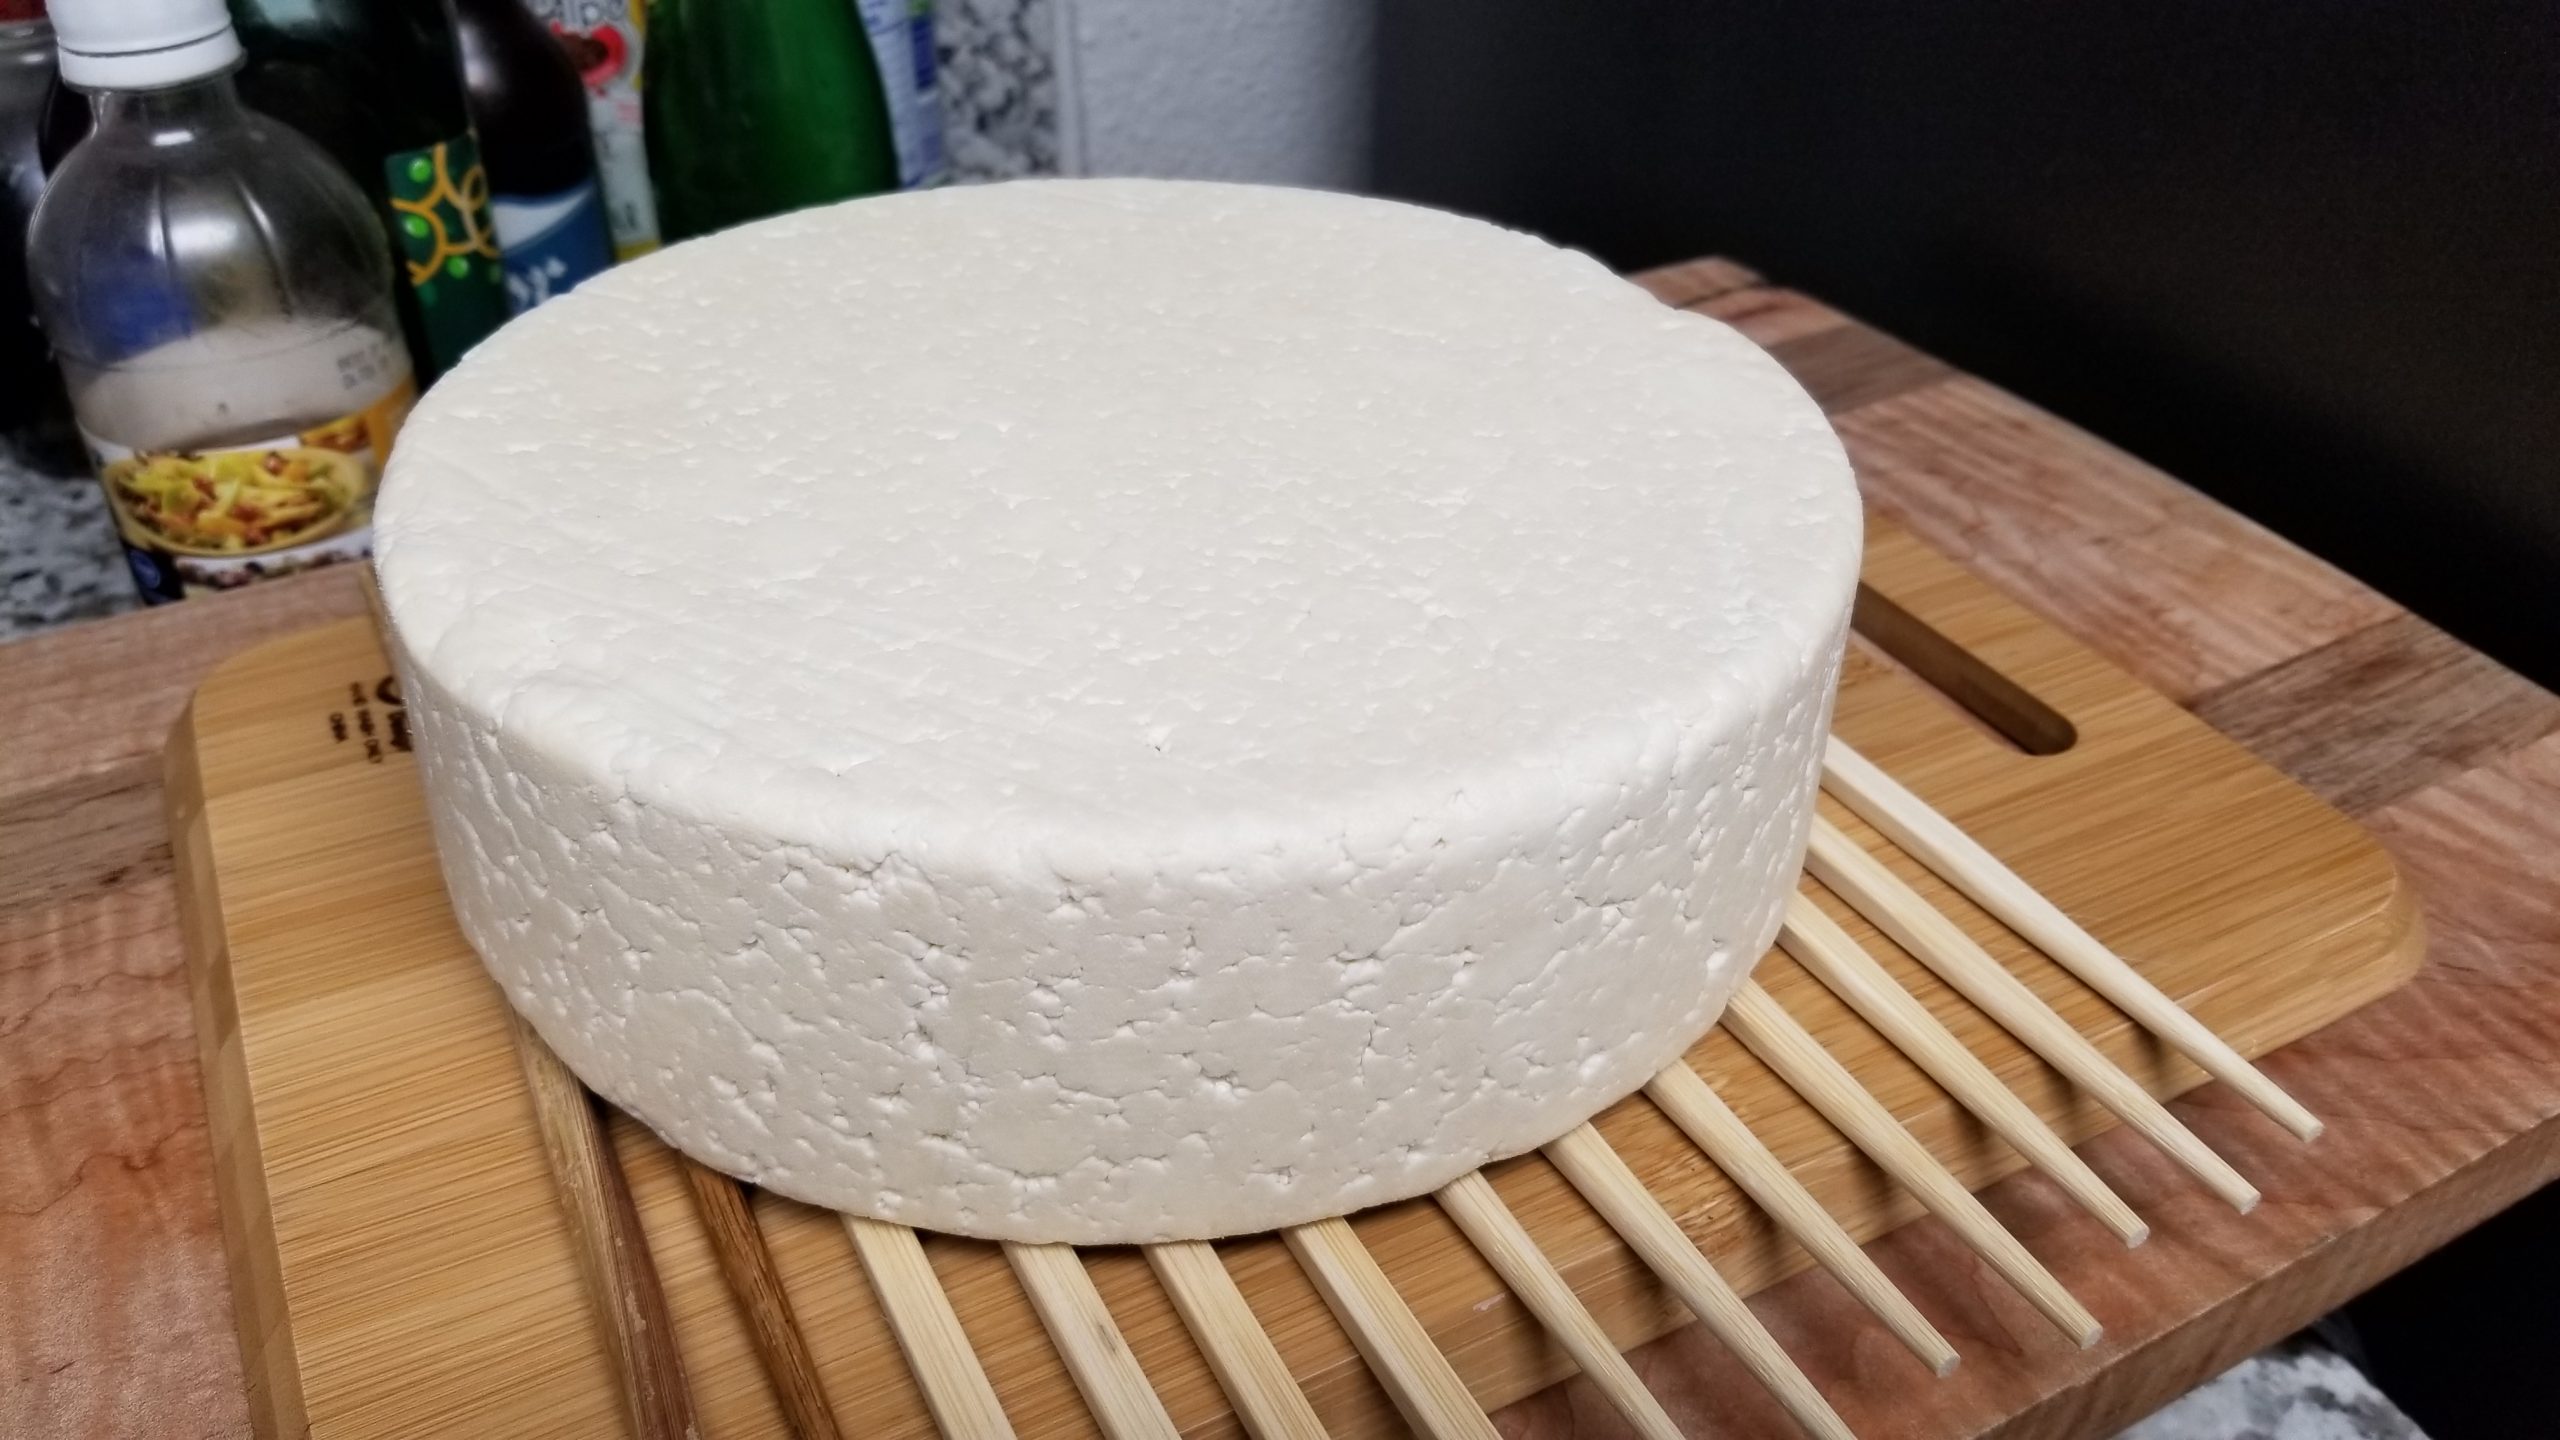 Making Homemade Artisanal Cheese